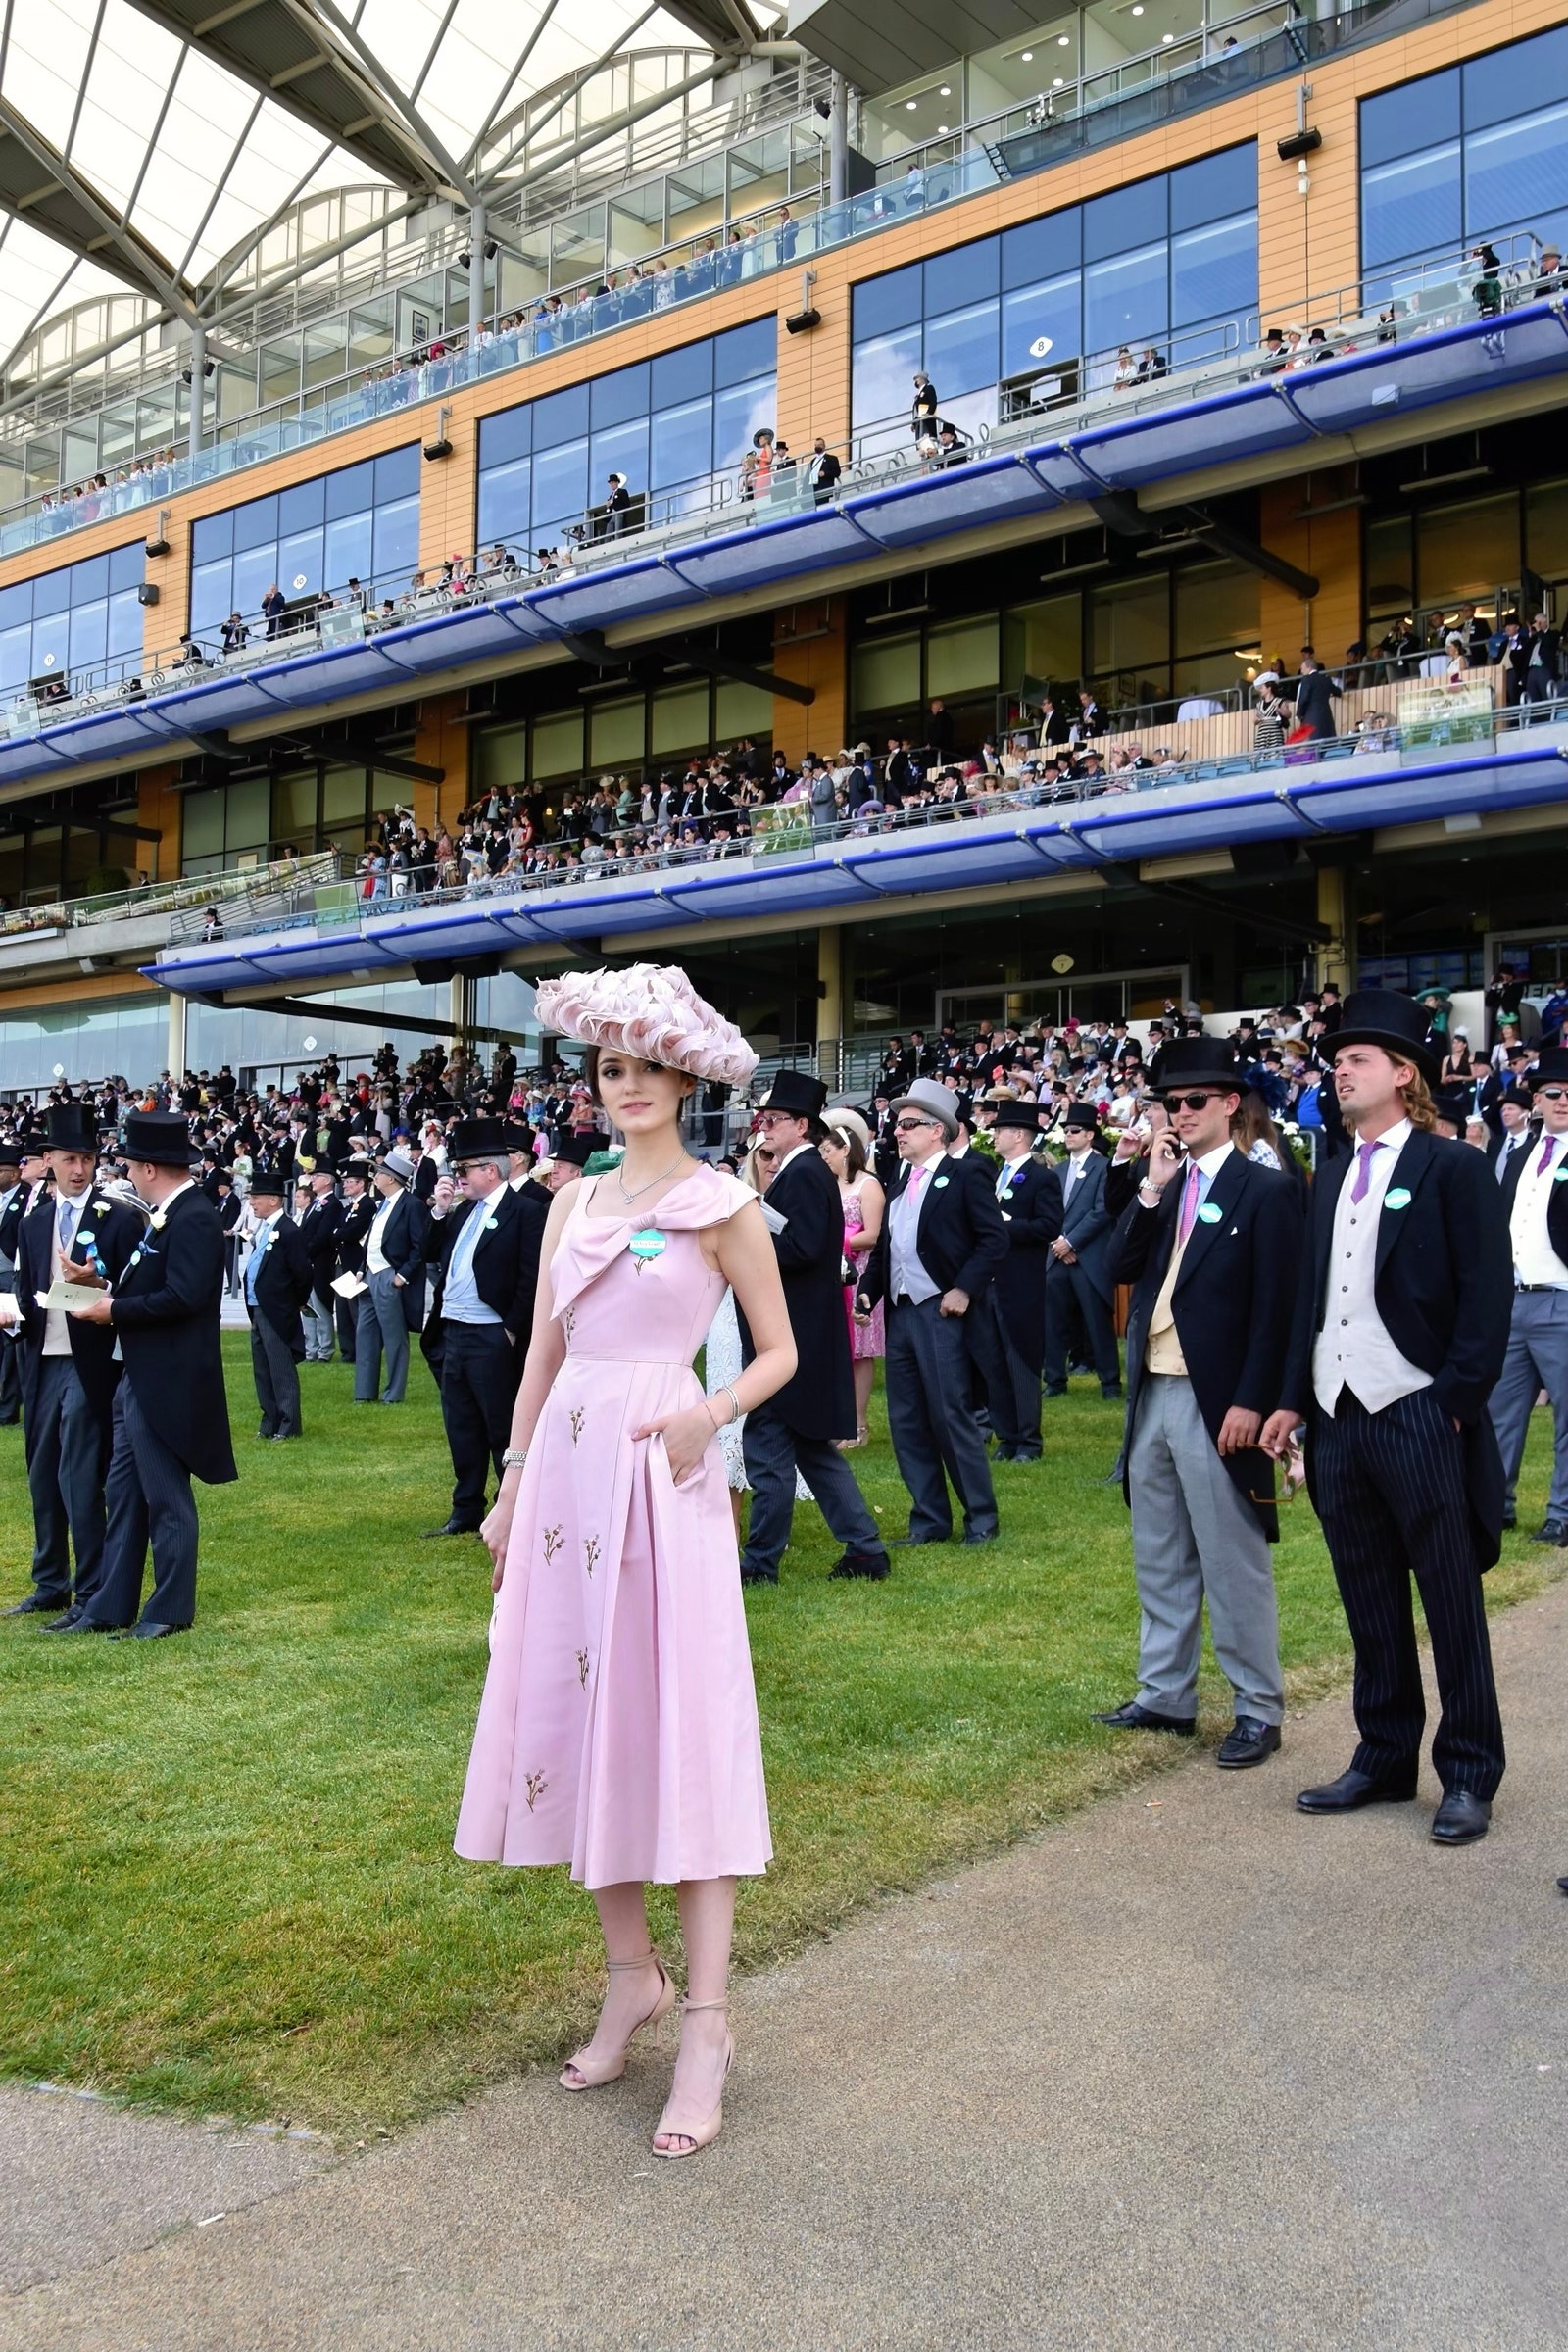 Как прошел Royal Ascot 2021 скачки шляпки и встреча с принцем — мнение инсайдера